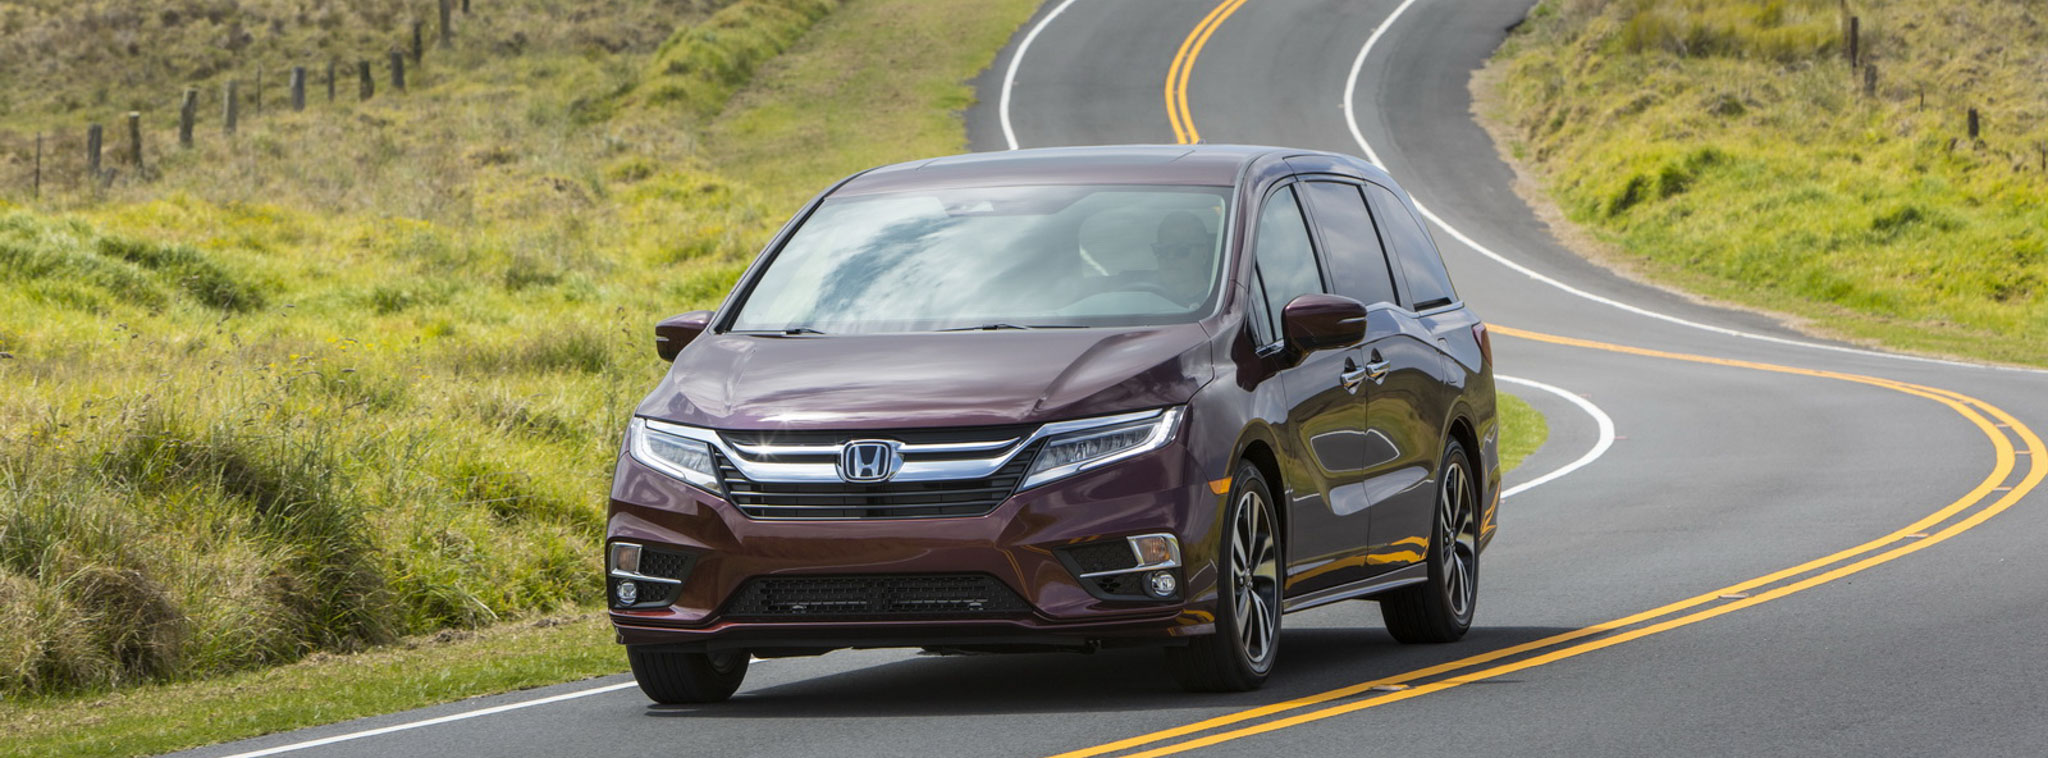 Honda Odyssey 2018 bán ra tại Mỹ với giá chỉ từ 30.000 USD